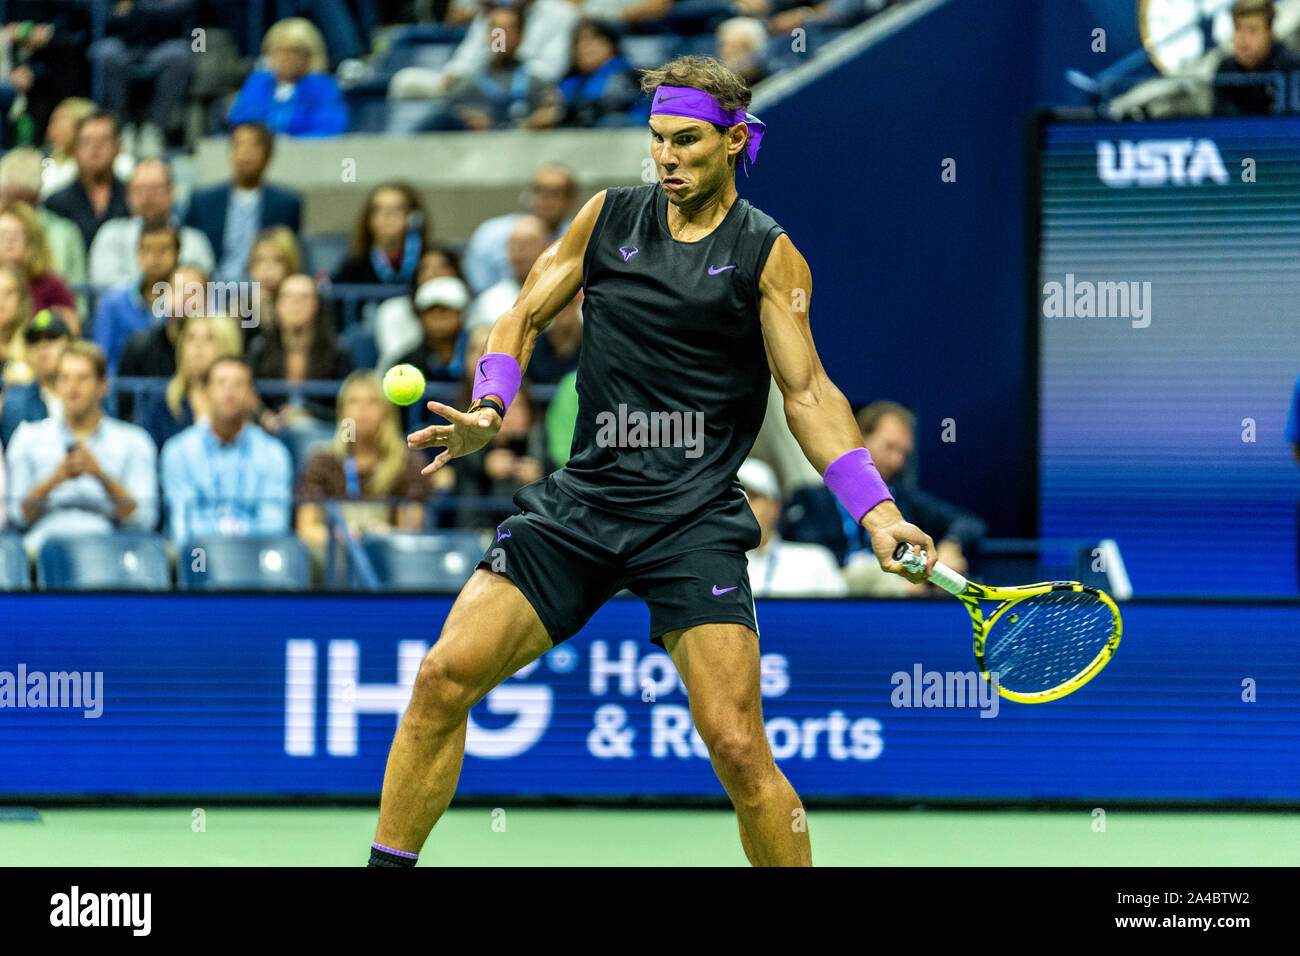 Rafael Nadal de l'Espagne en compétition dans les demi-finales hommes à l'US Open Tennis Championship 2019 Banque D'Images